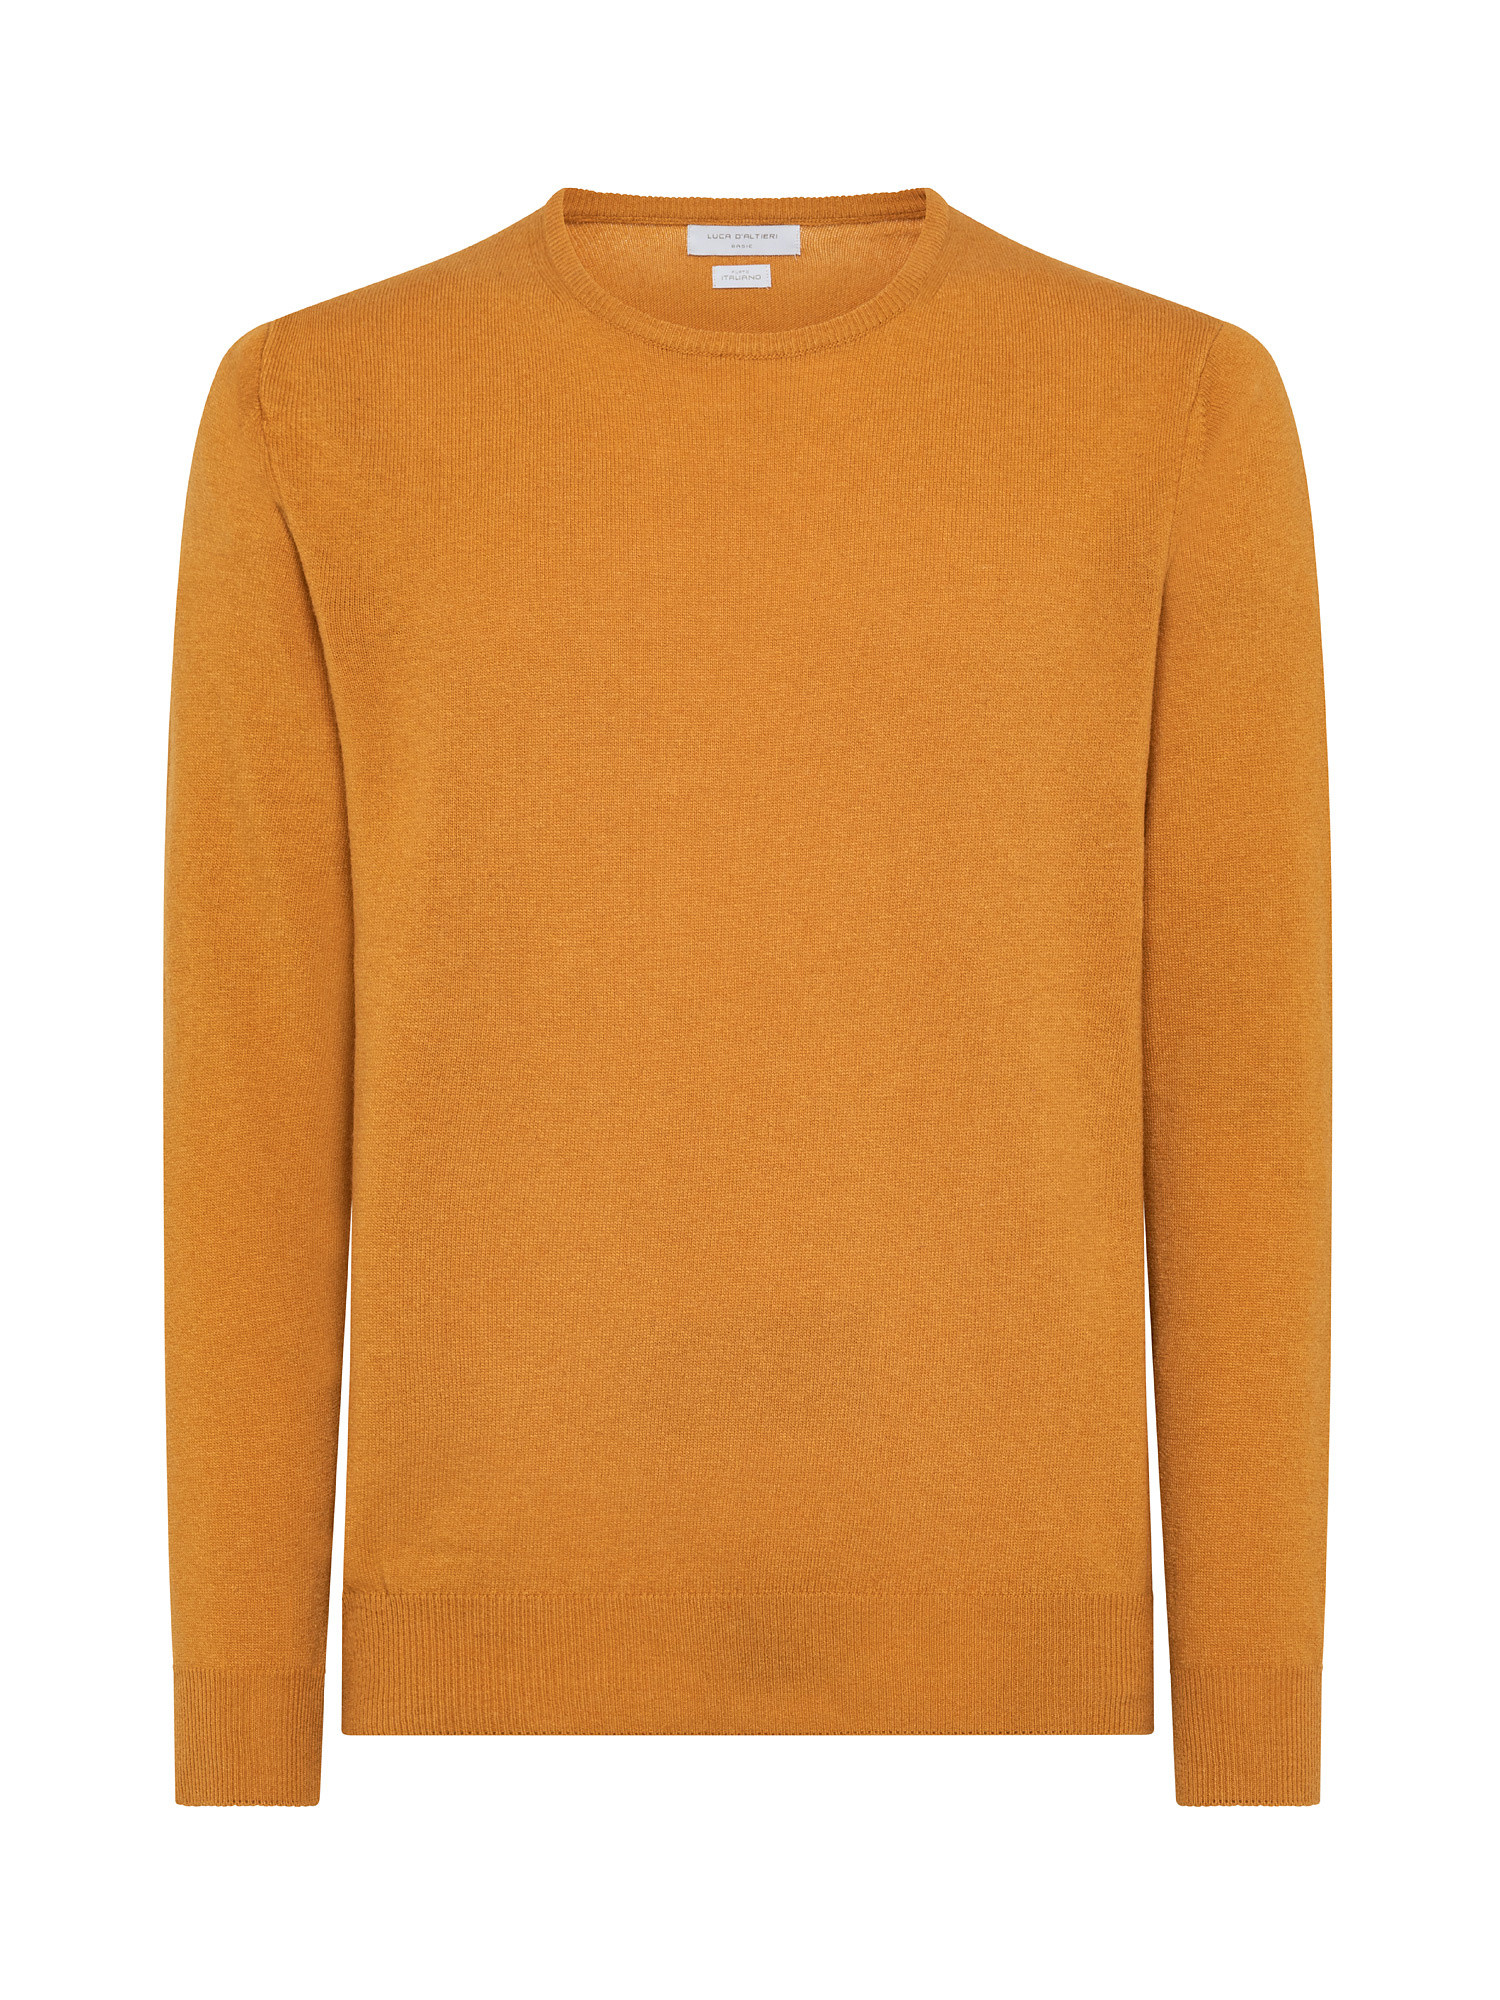 Basic cashmere blend pullover, Orange, large image number 0